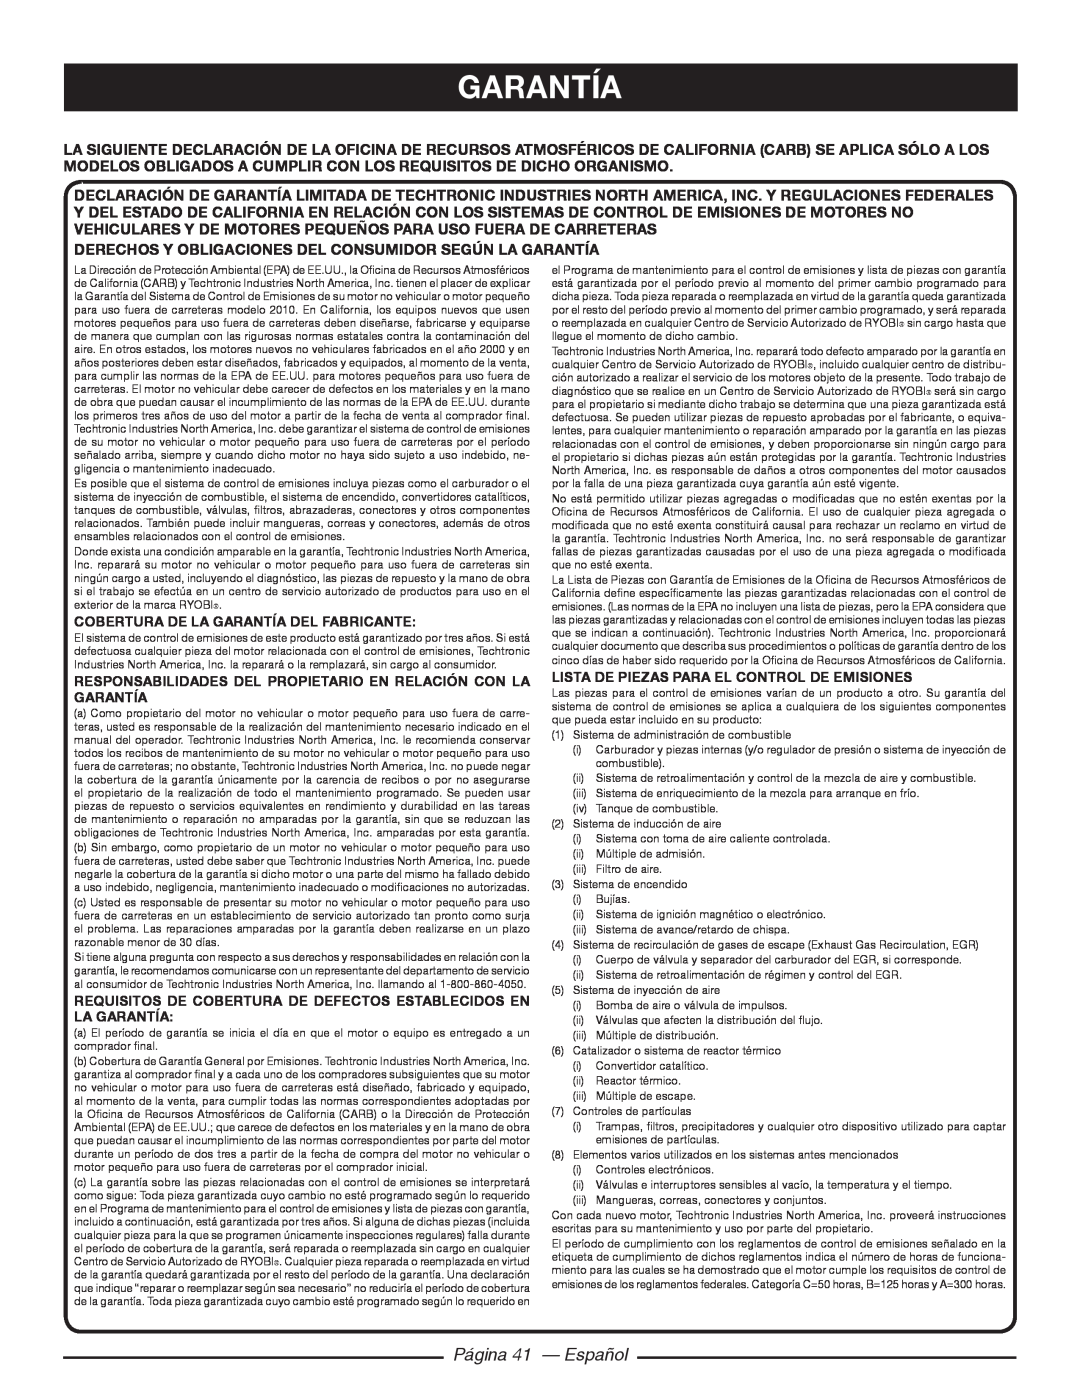 Ryobi RY10518, RY10520 manuel dutilisation Página 41 - Español, Cobertura De La Garantía Del Fabricante 